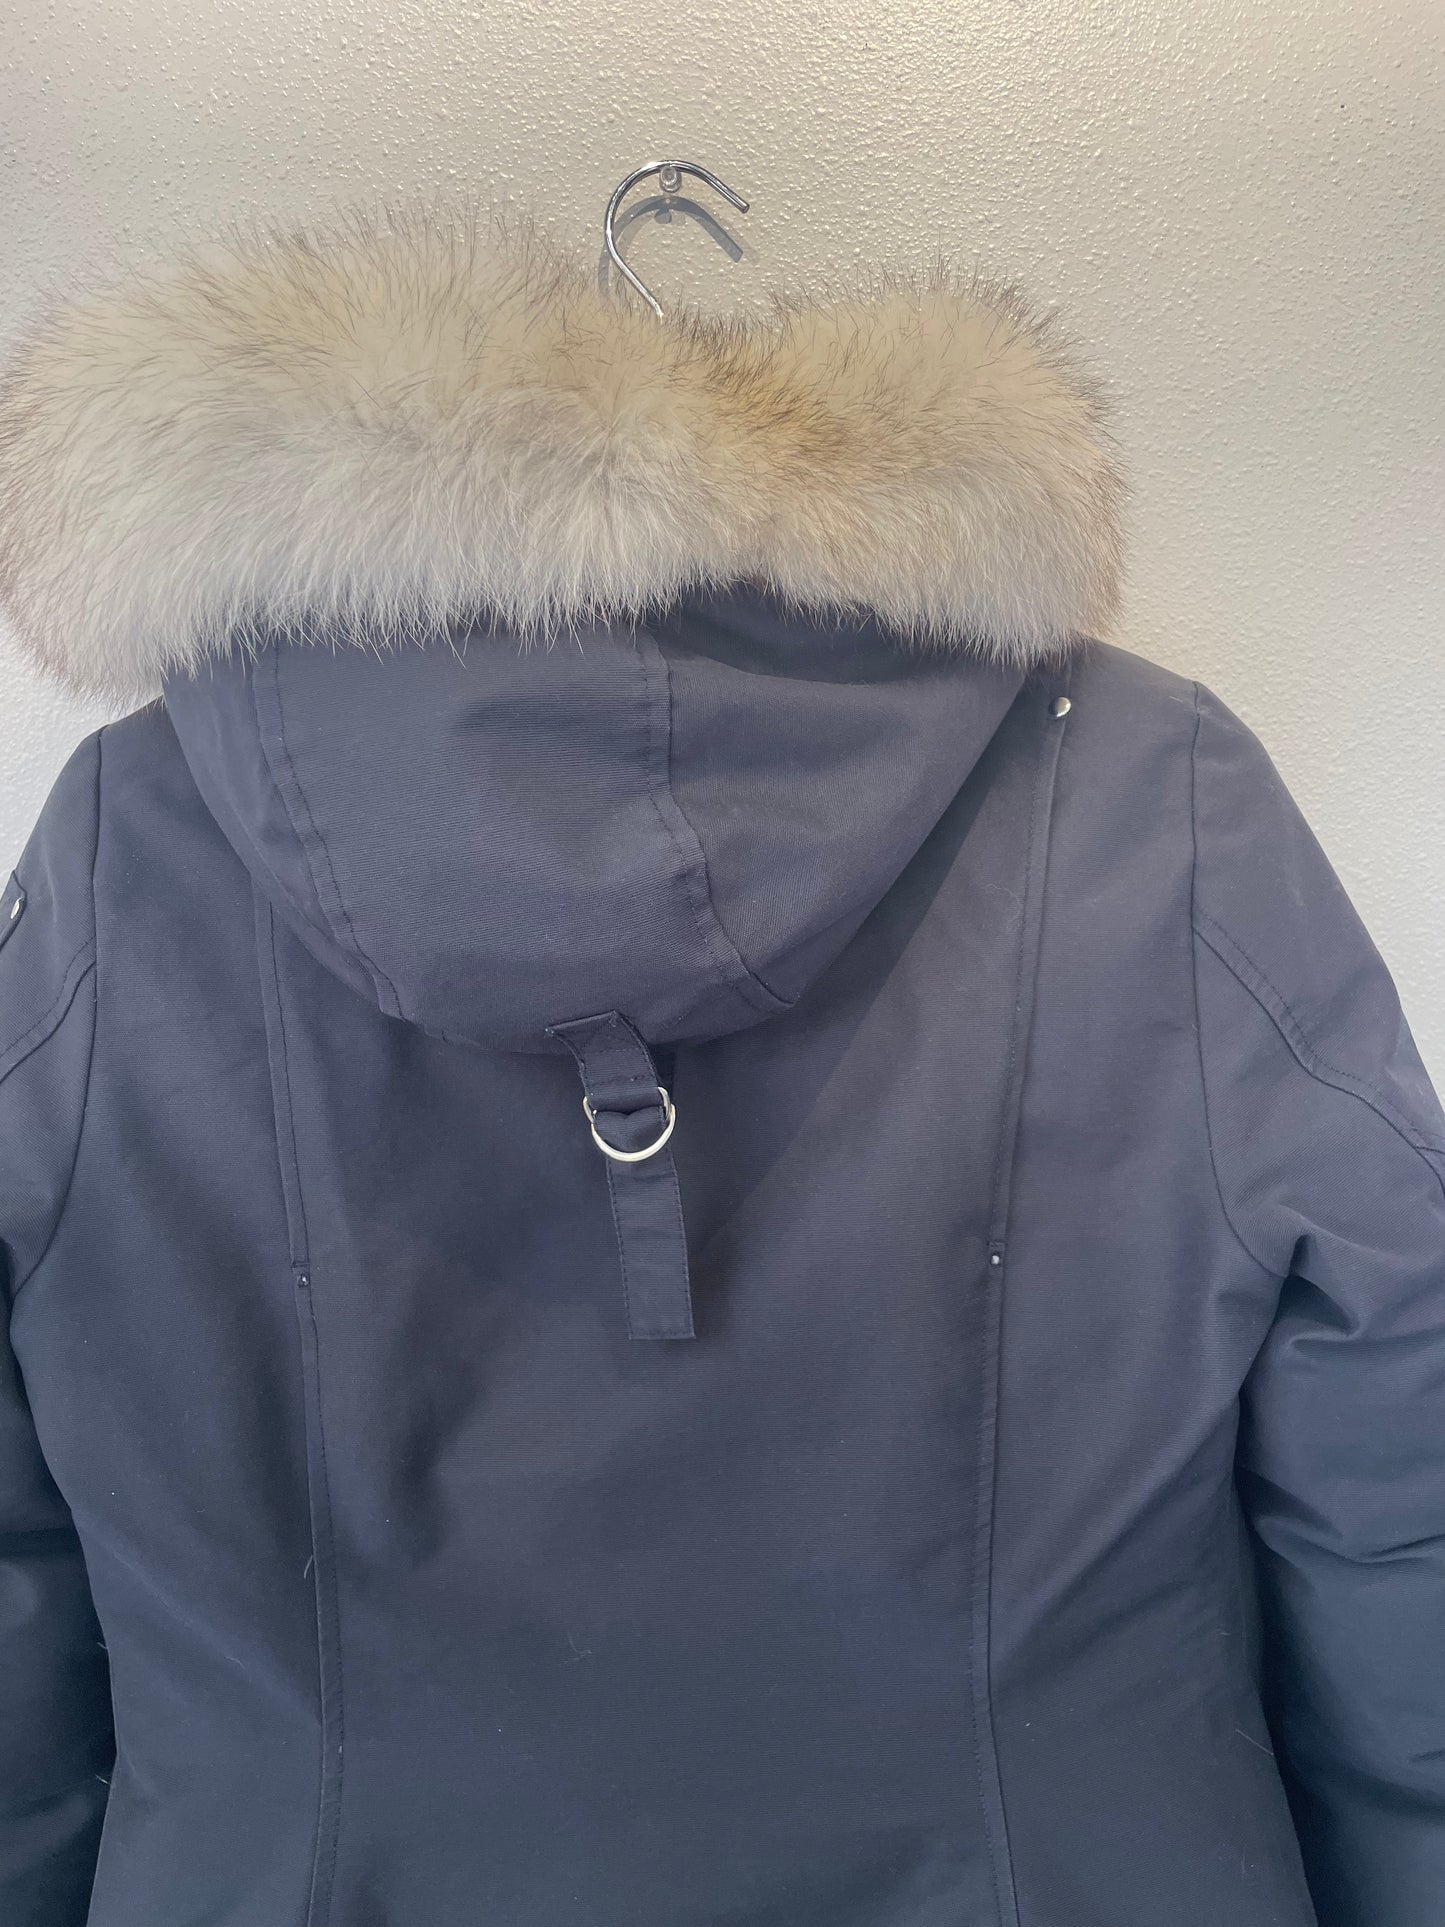 Moose Knuckles "Original Stirling Parka Fur" Coat